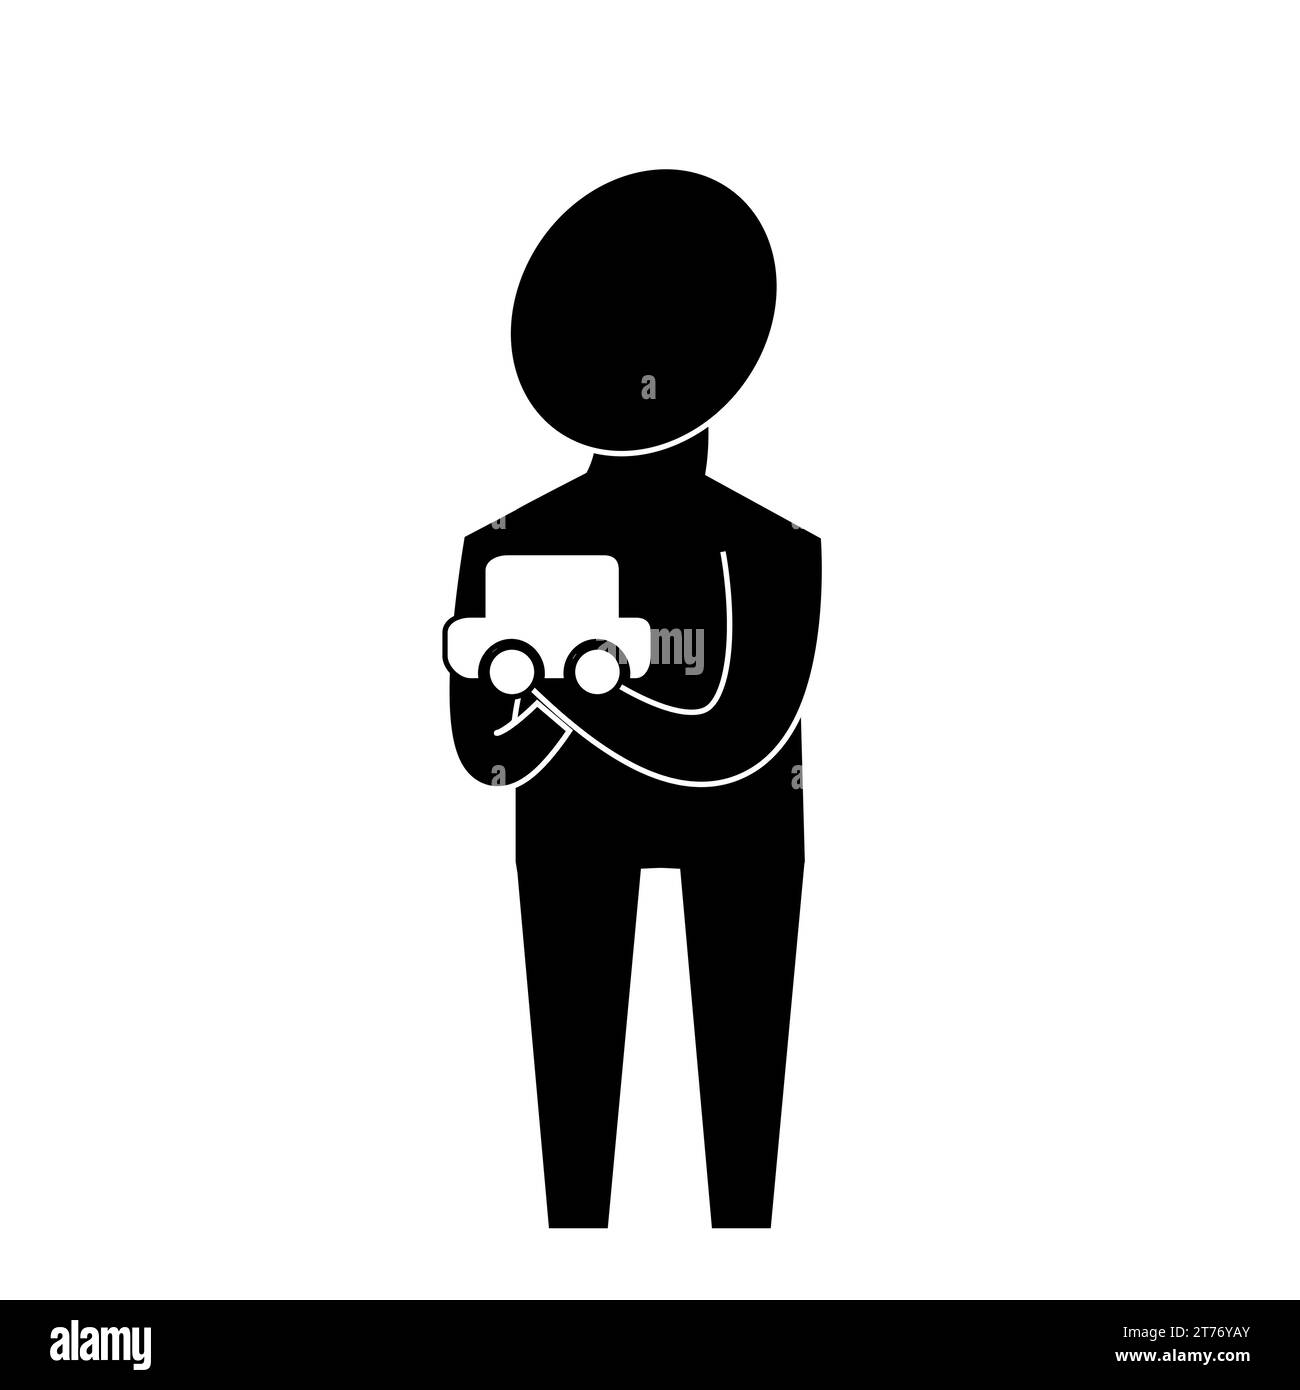 La figura di un piccolo bambino umano con una macchina da scrivere in mano nello stile dell'infografica. Illustrazione Vettoriale